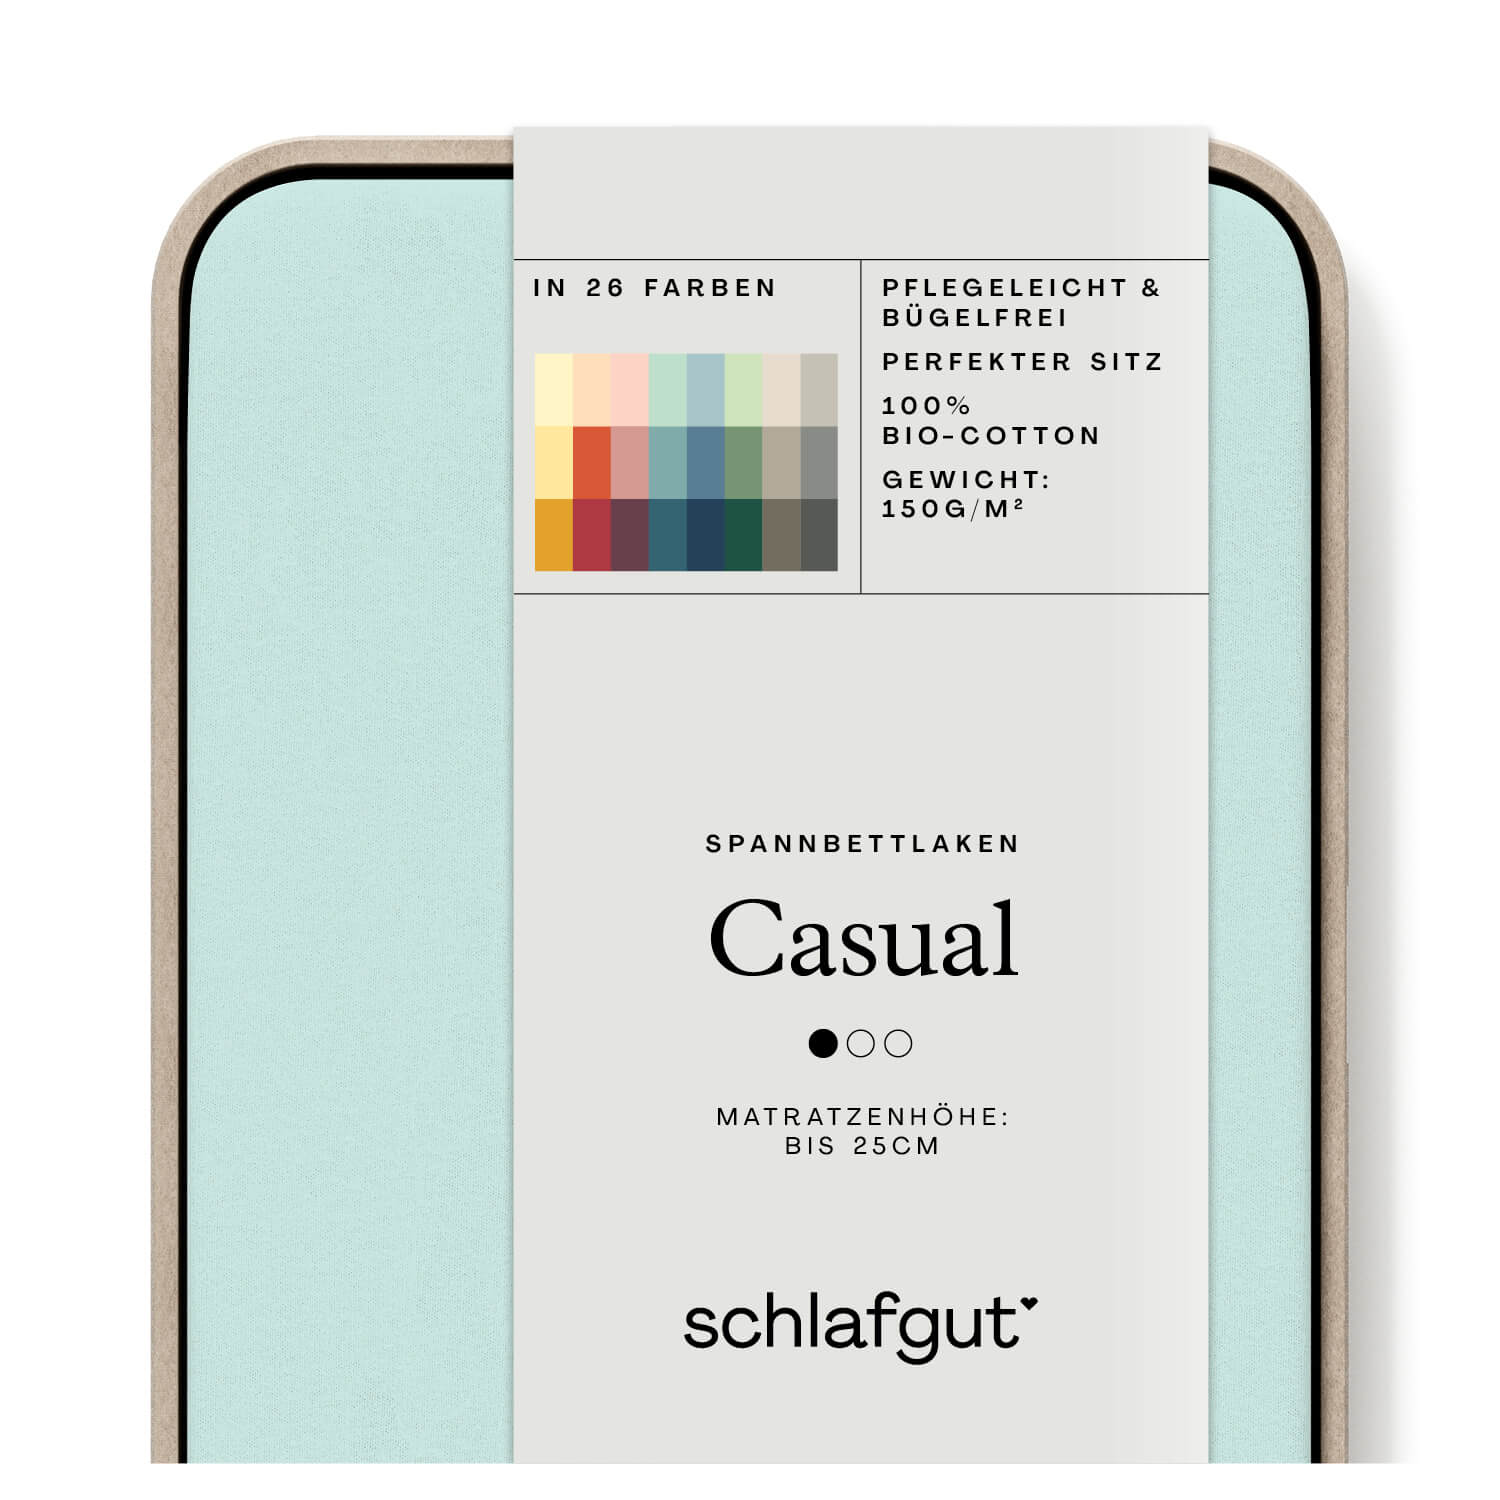 Das Produktbild vom Spannbettlaken der Reihe Casual in Farbe petrol light von Schlafgut